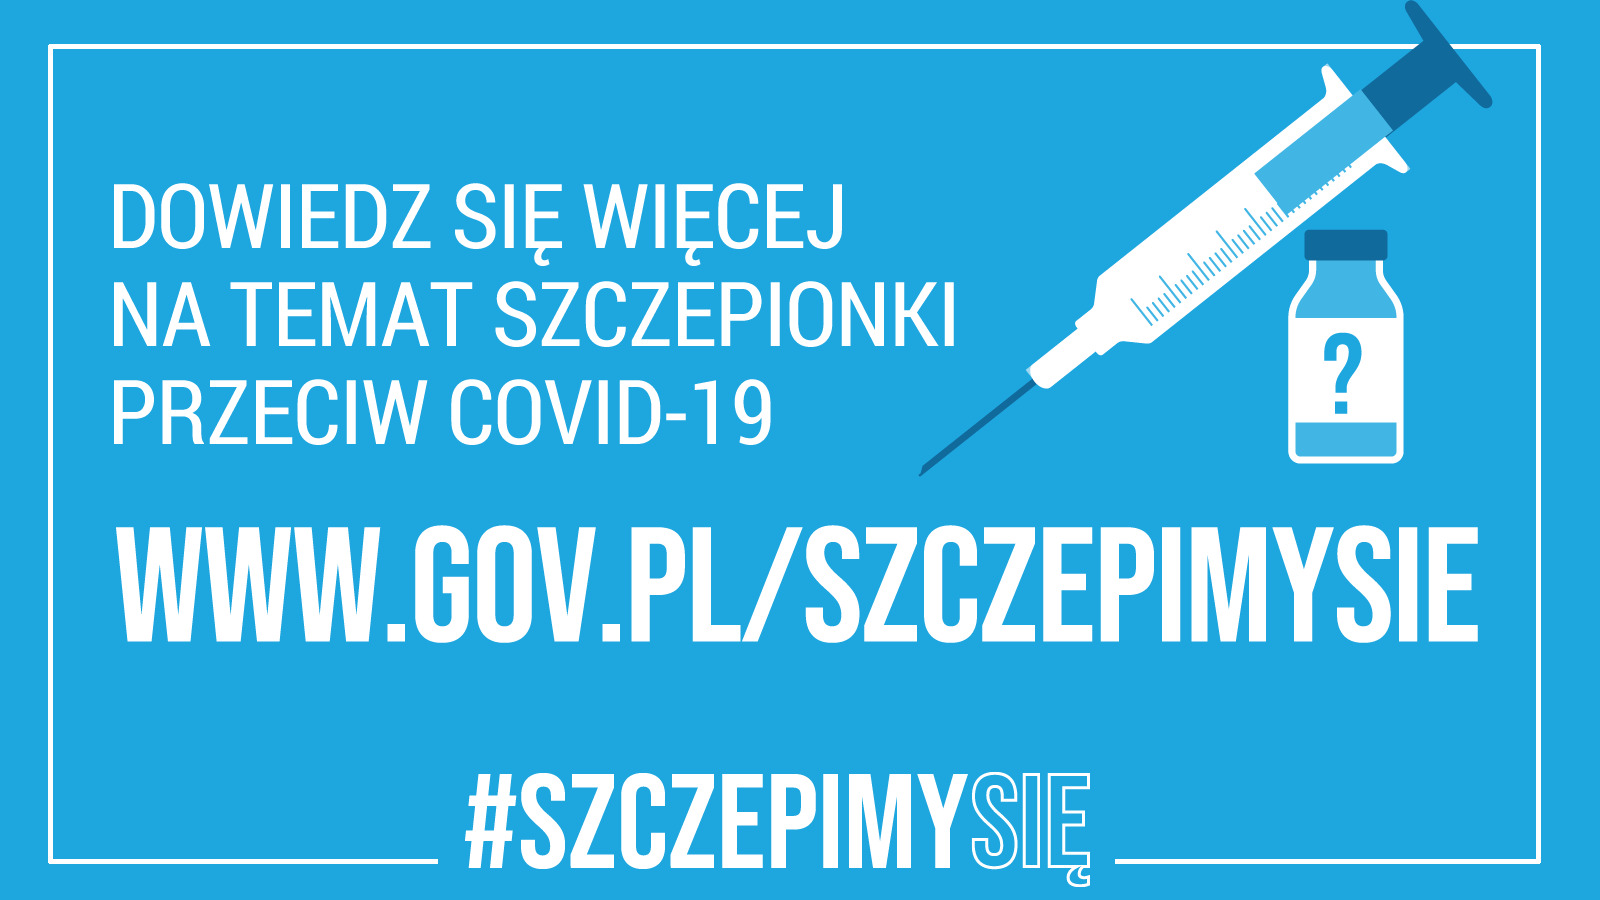 Plakat informujący o stronie internetowej www.gov.pl/szczepimysie gdzie znajdziemy więcej informacji o szczepieniach przeciw COVID-19